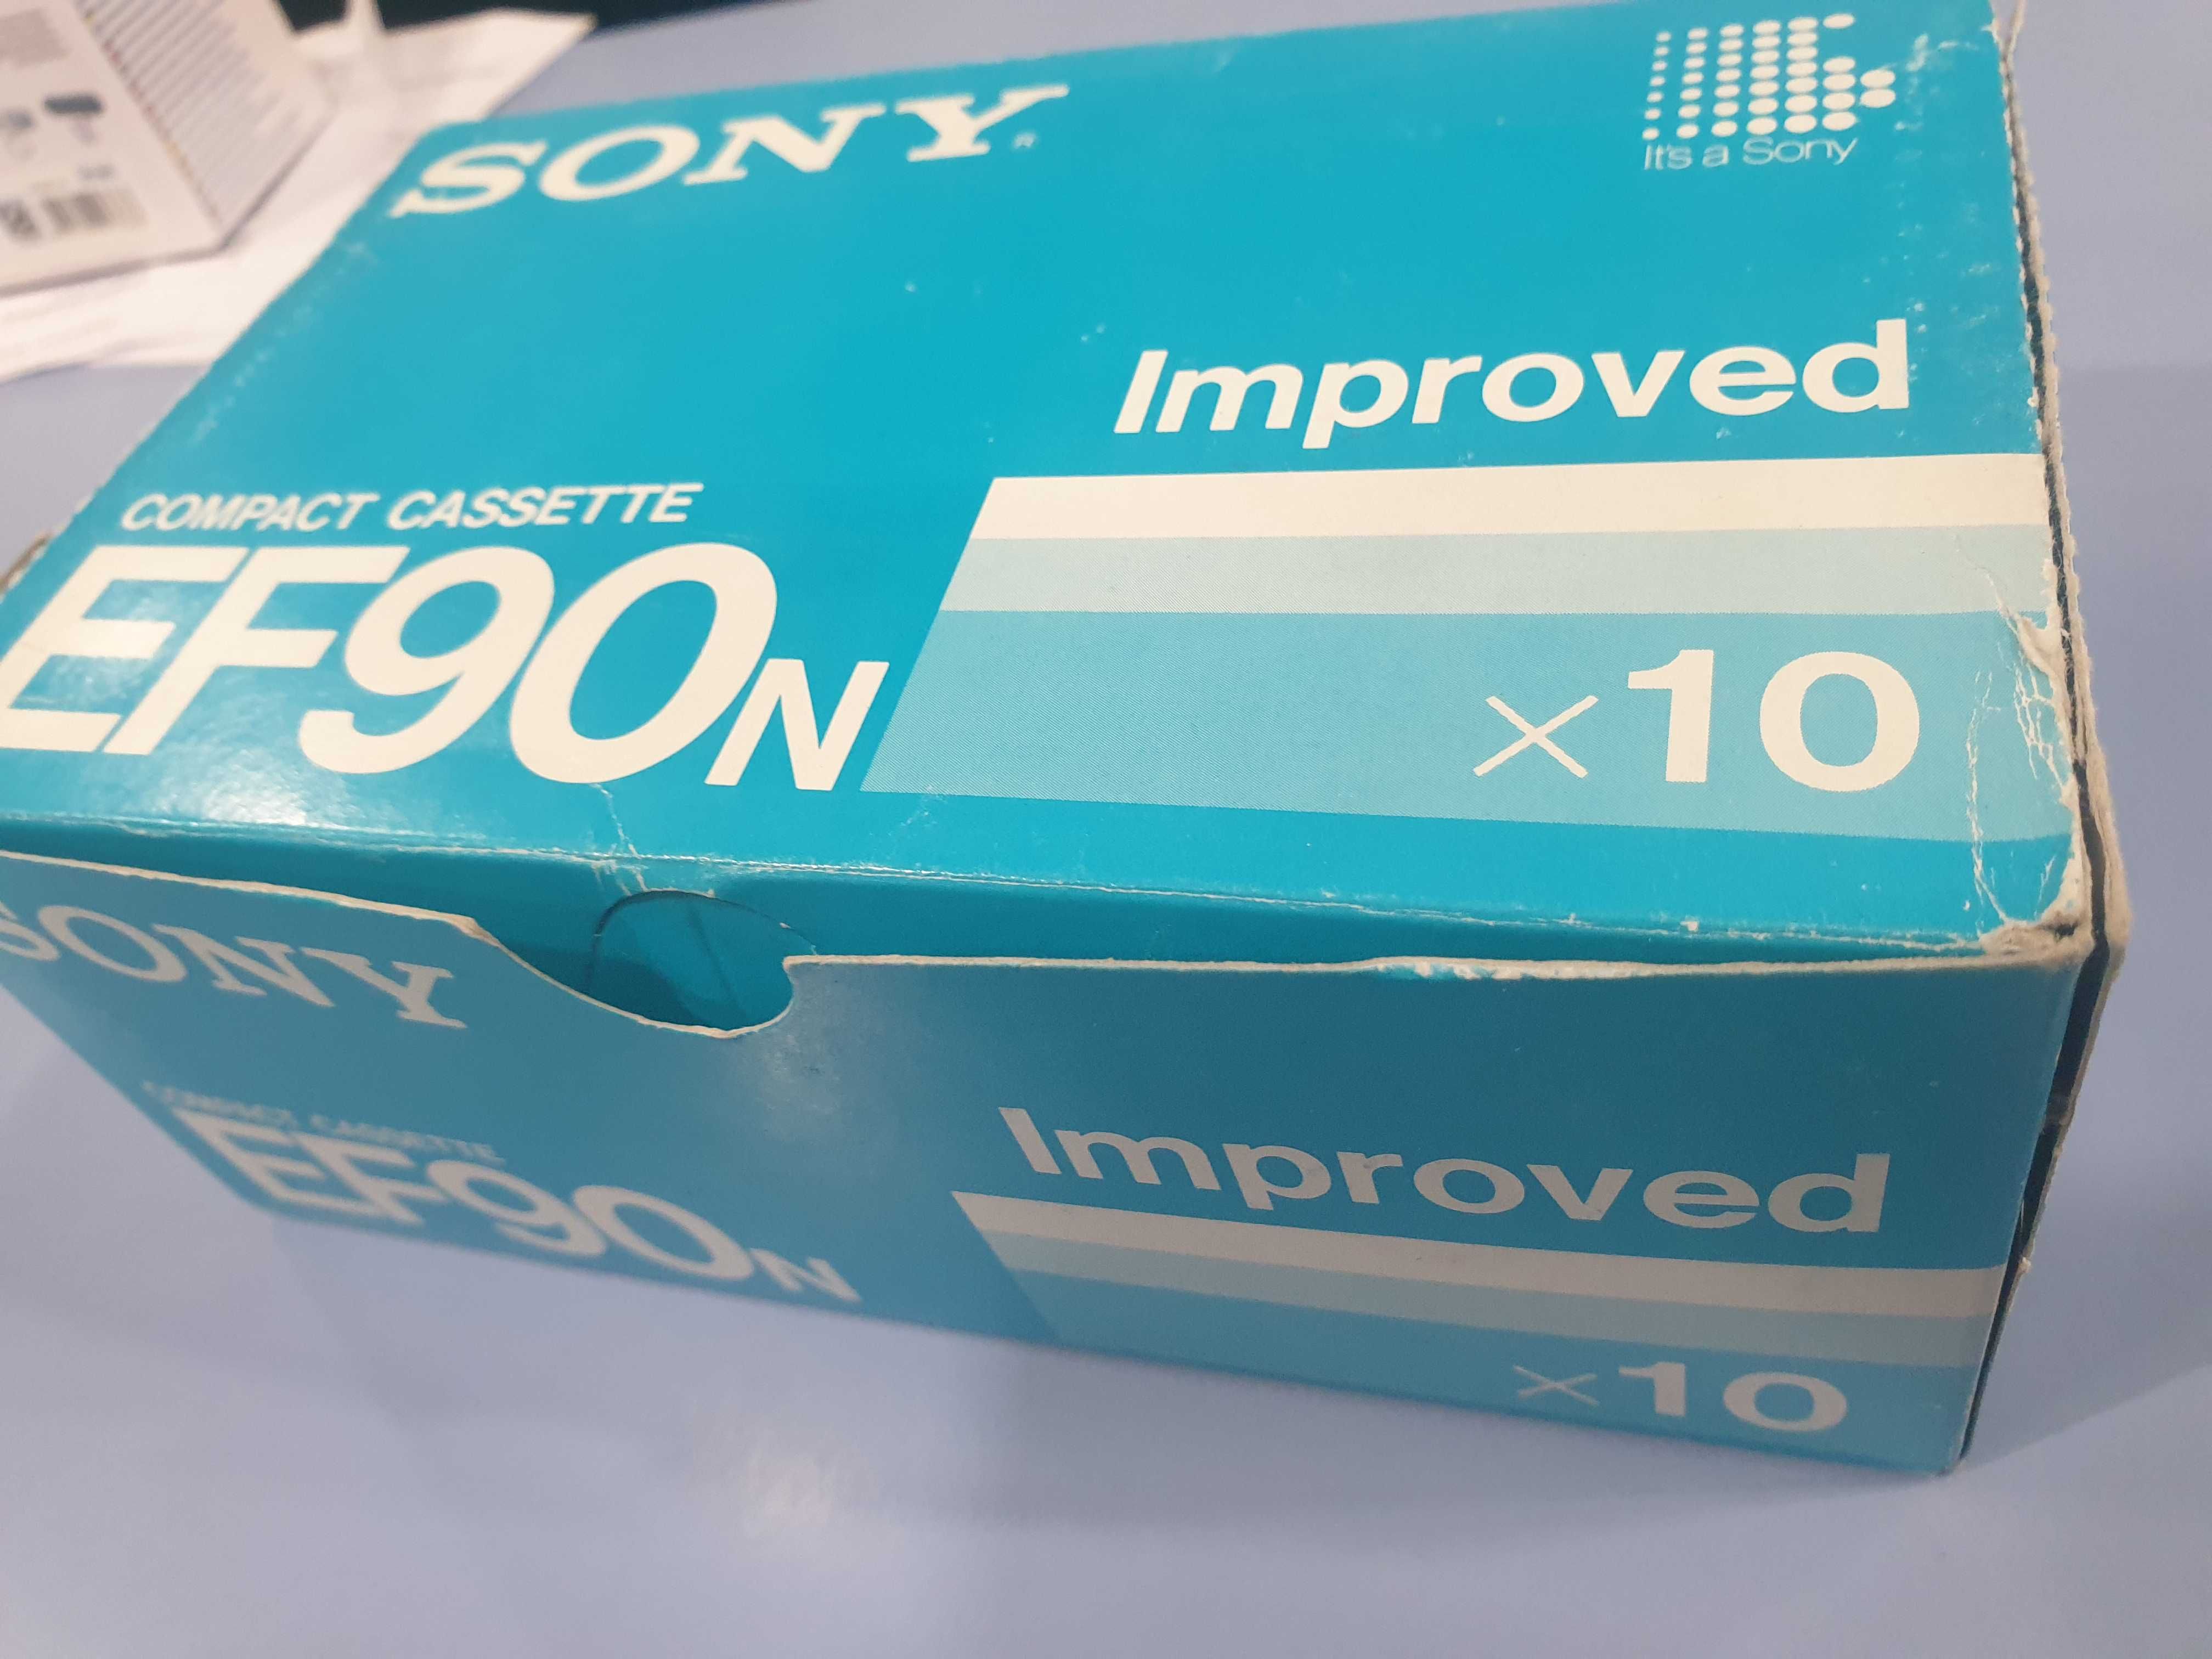 Kasety magnetofonowe Sony EF 90